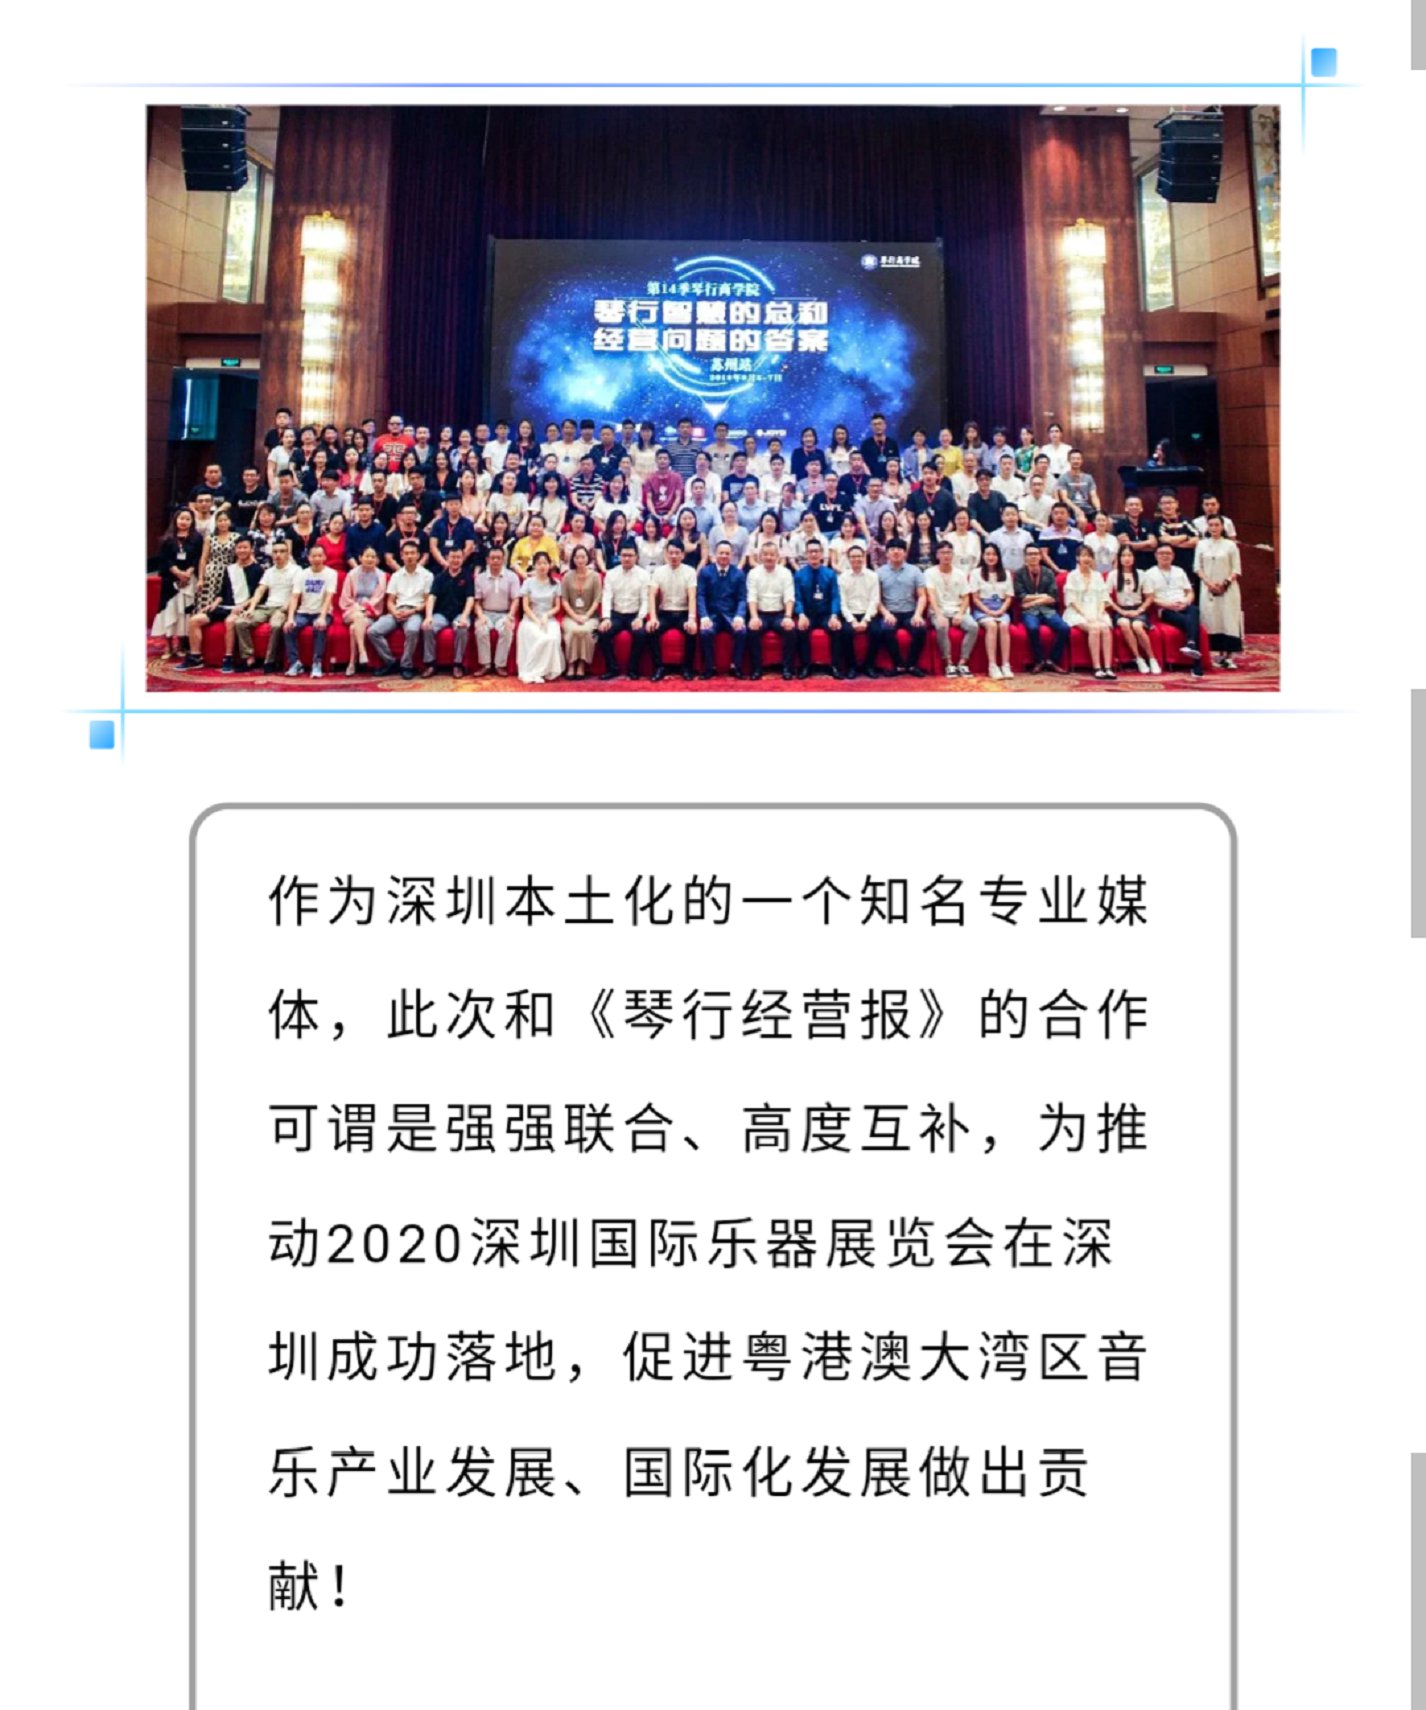 深圳国际乐器展览会与《琴行经营报》达成战略合作